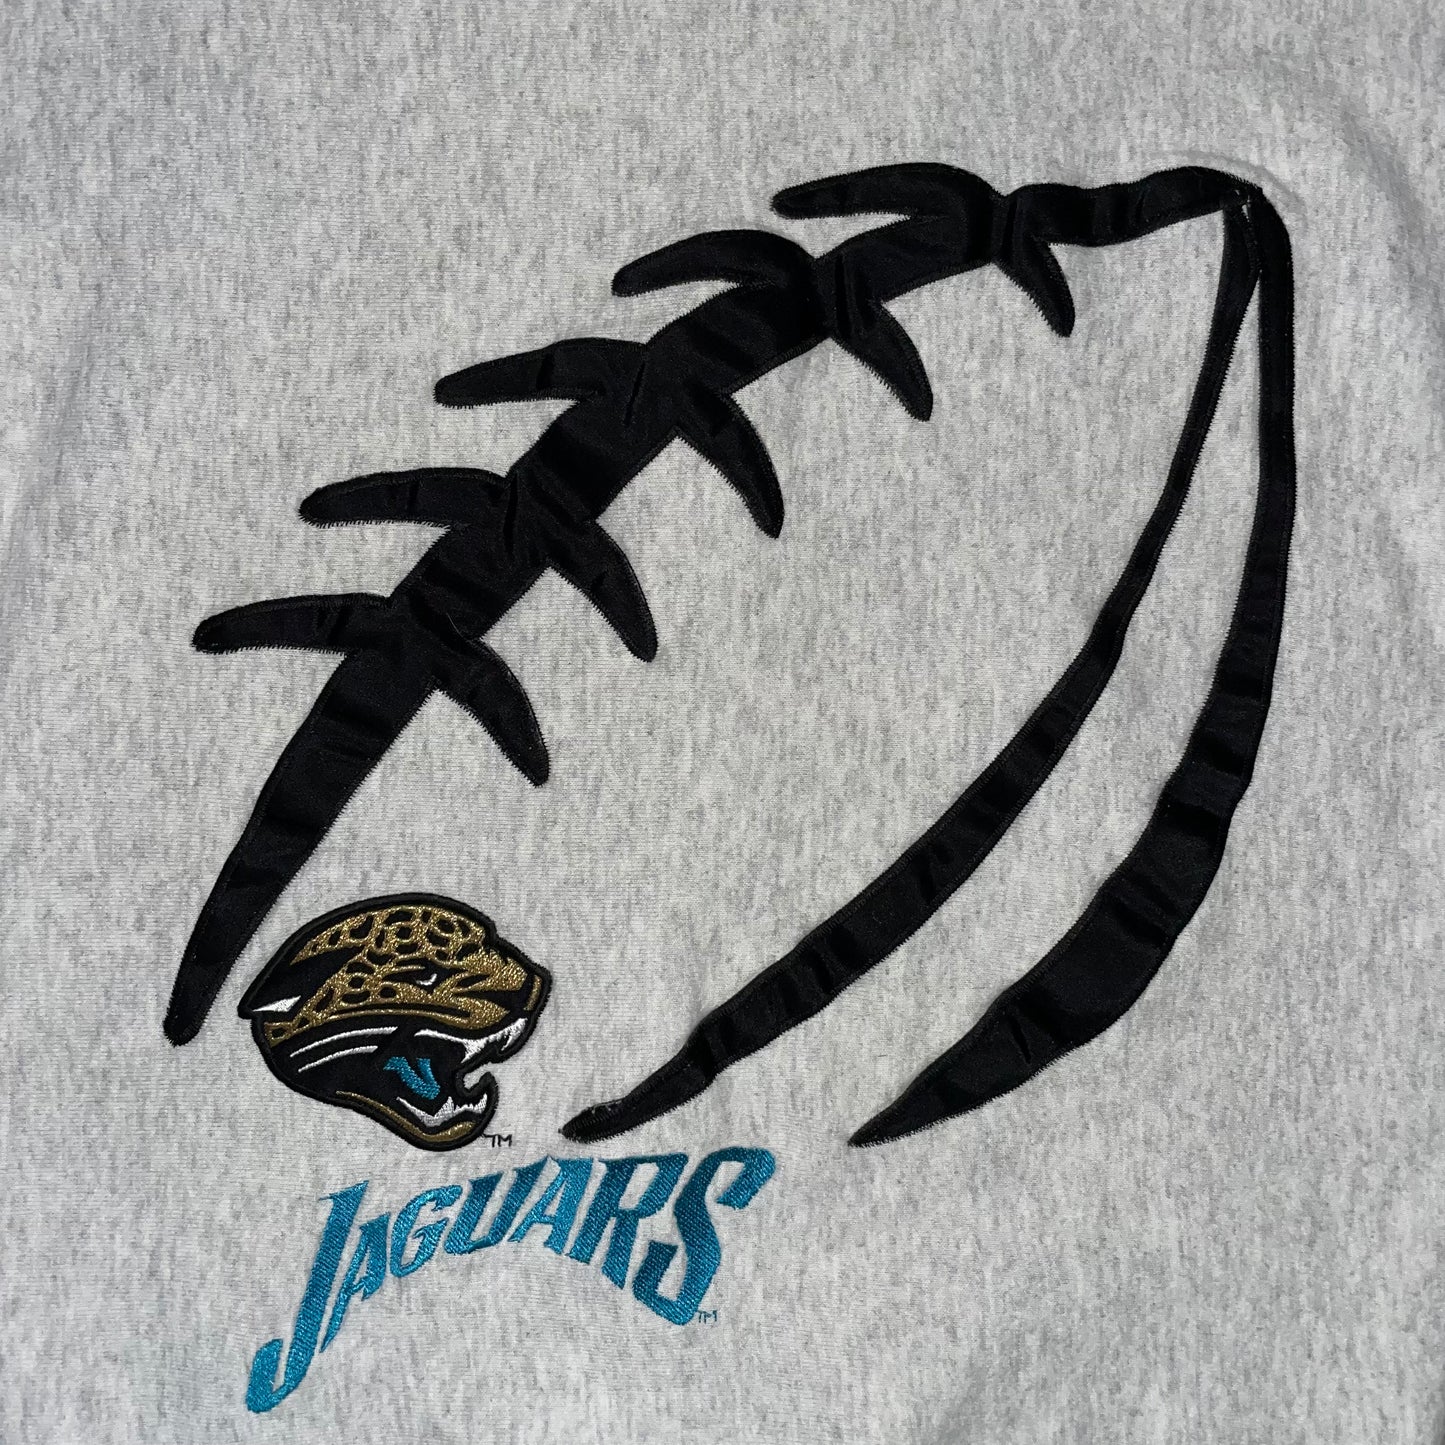 Vintage Jacksonville Jaguars Embroidered sweatshirt size SMALL